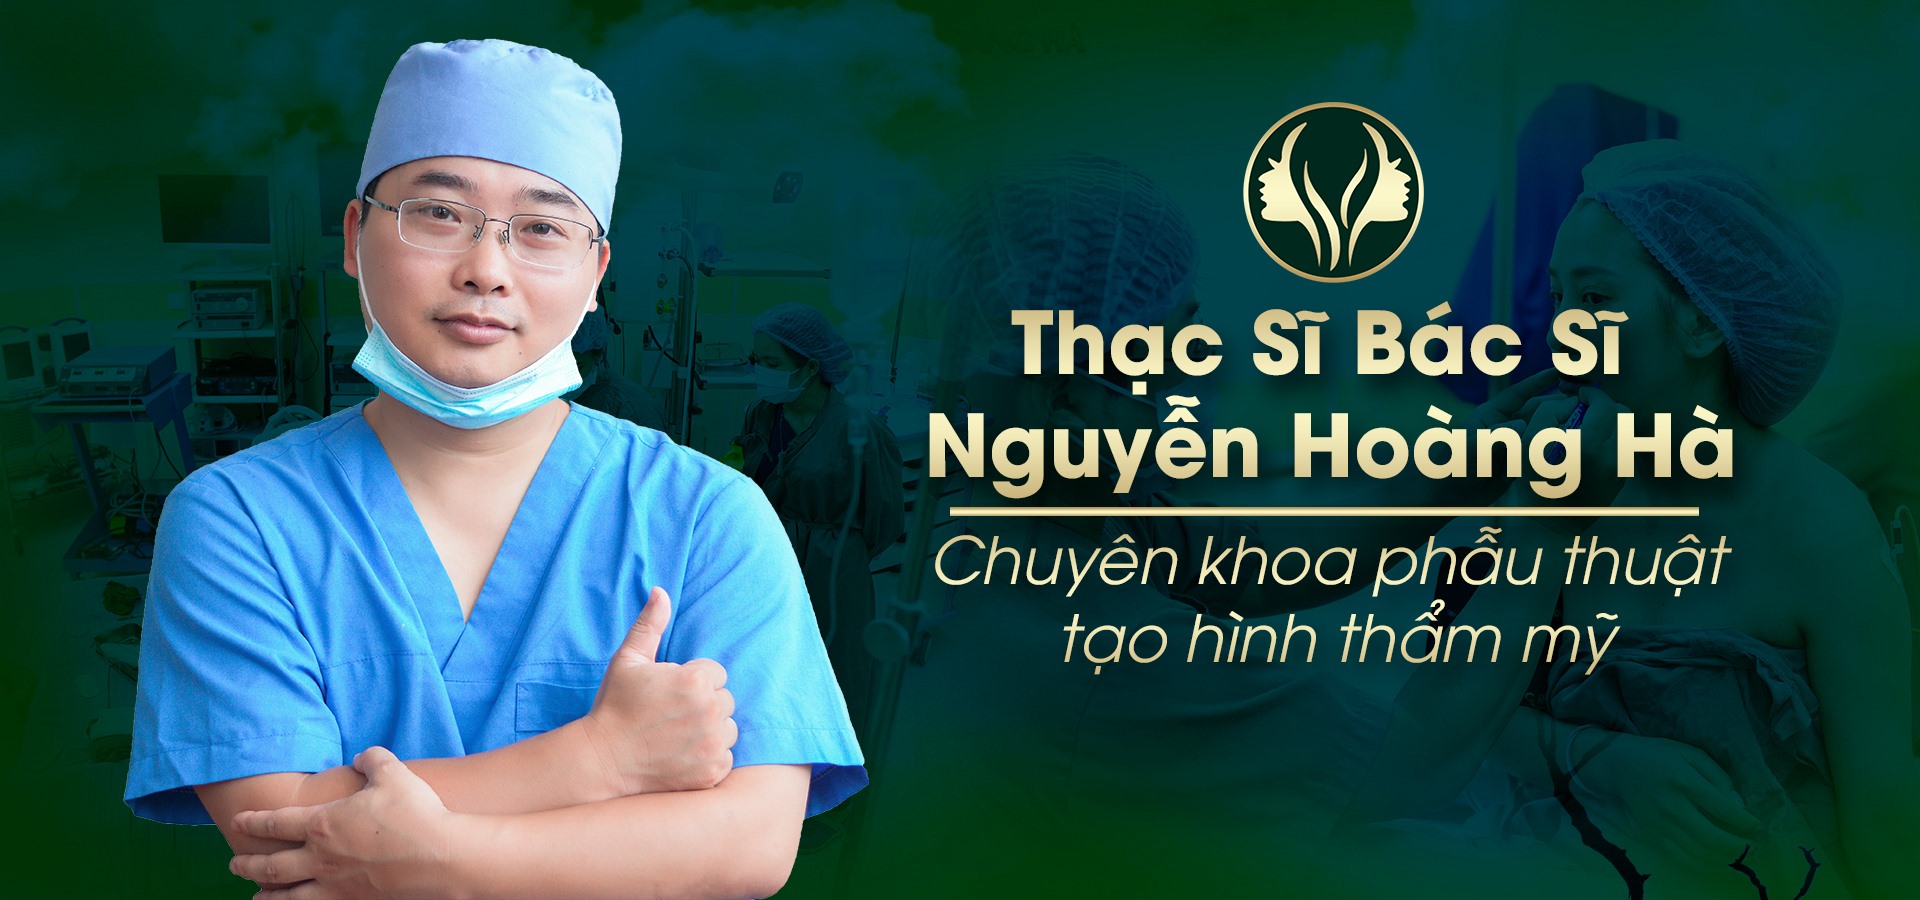 Ths.BS Nguyễn Hoàng Hà giám đốc điều hành & phẫu thuật tại Dr Hoàng Hà